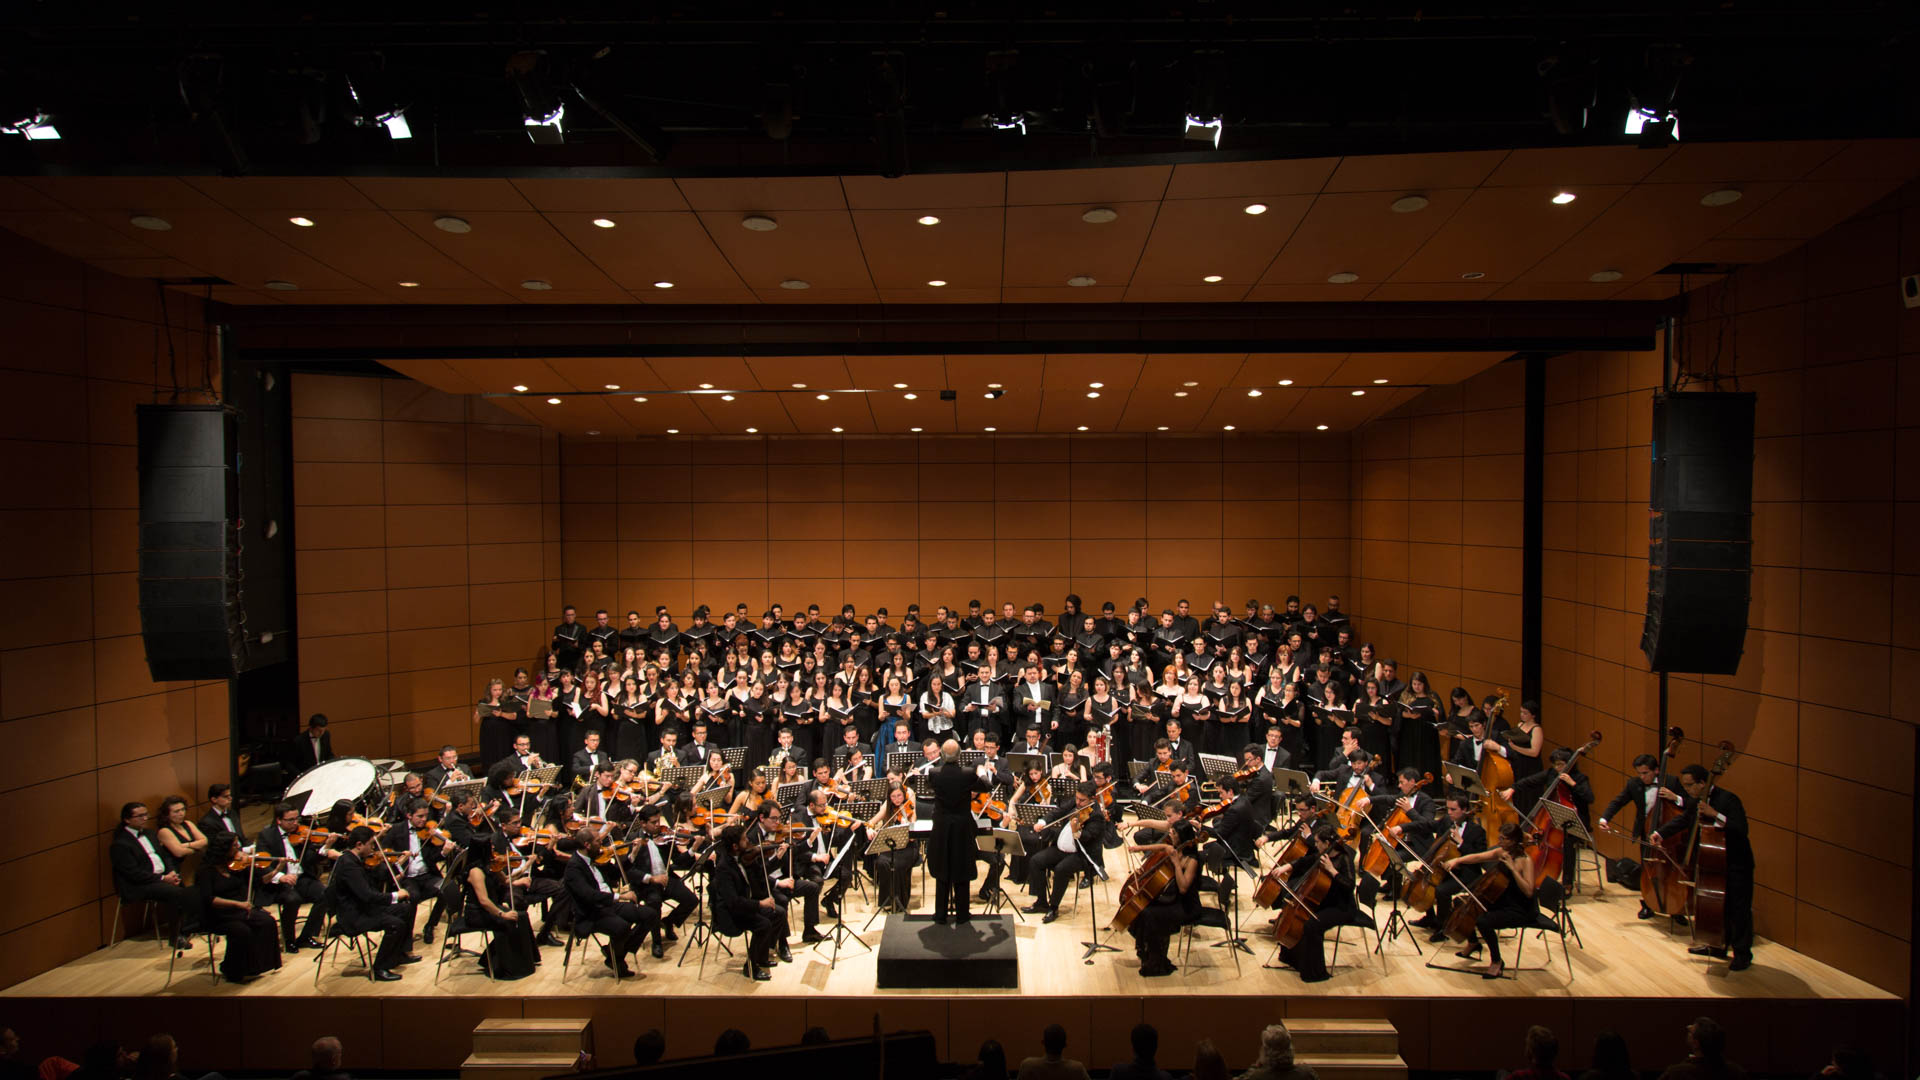 El Coro y la Orquesta de Los Andes presentan el Réquiem de Mozart